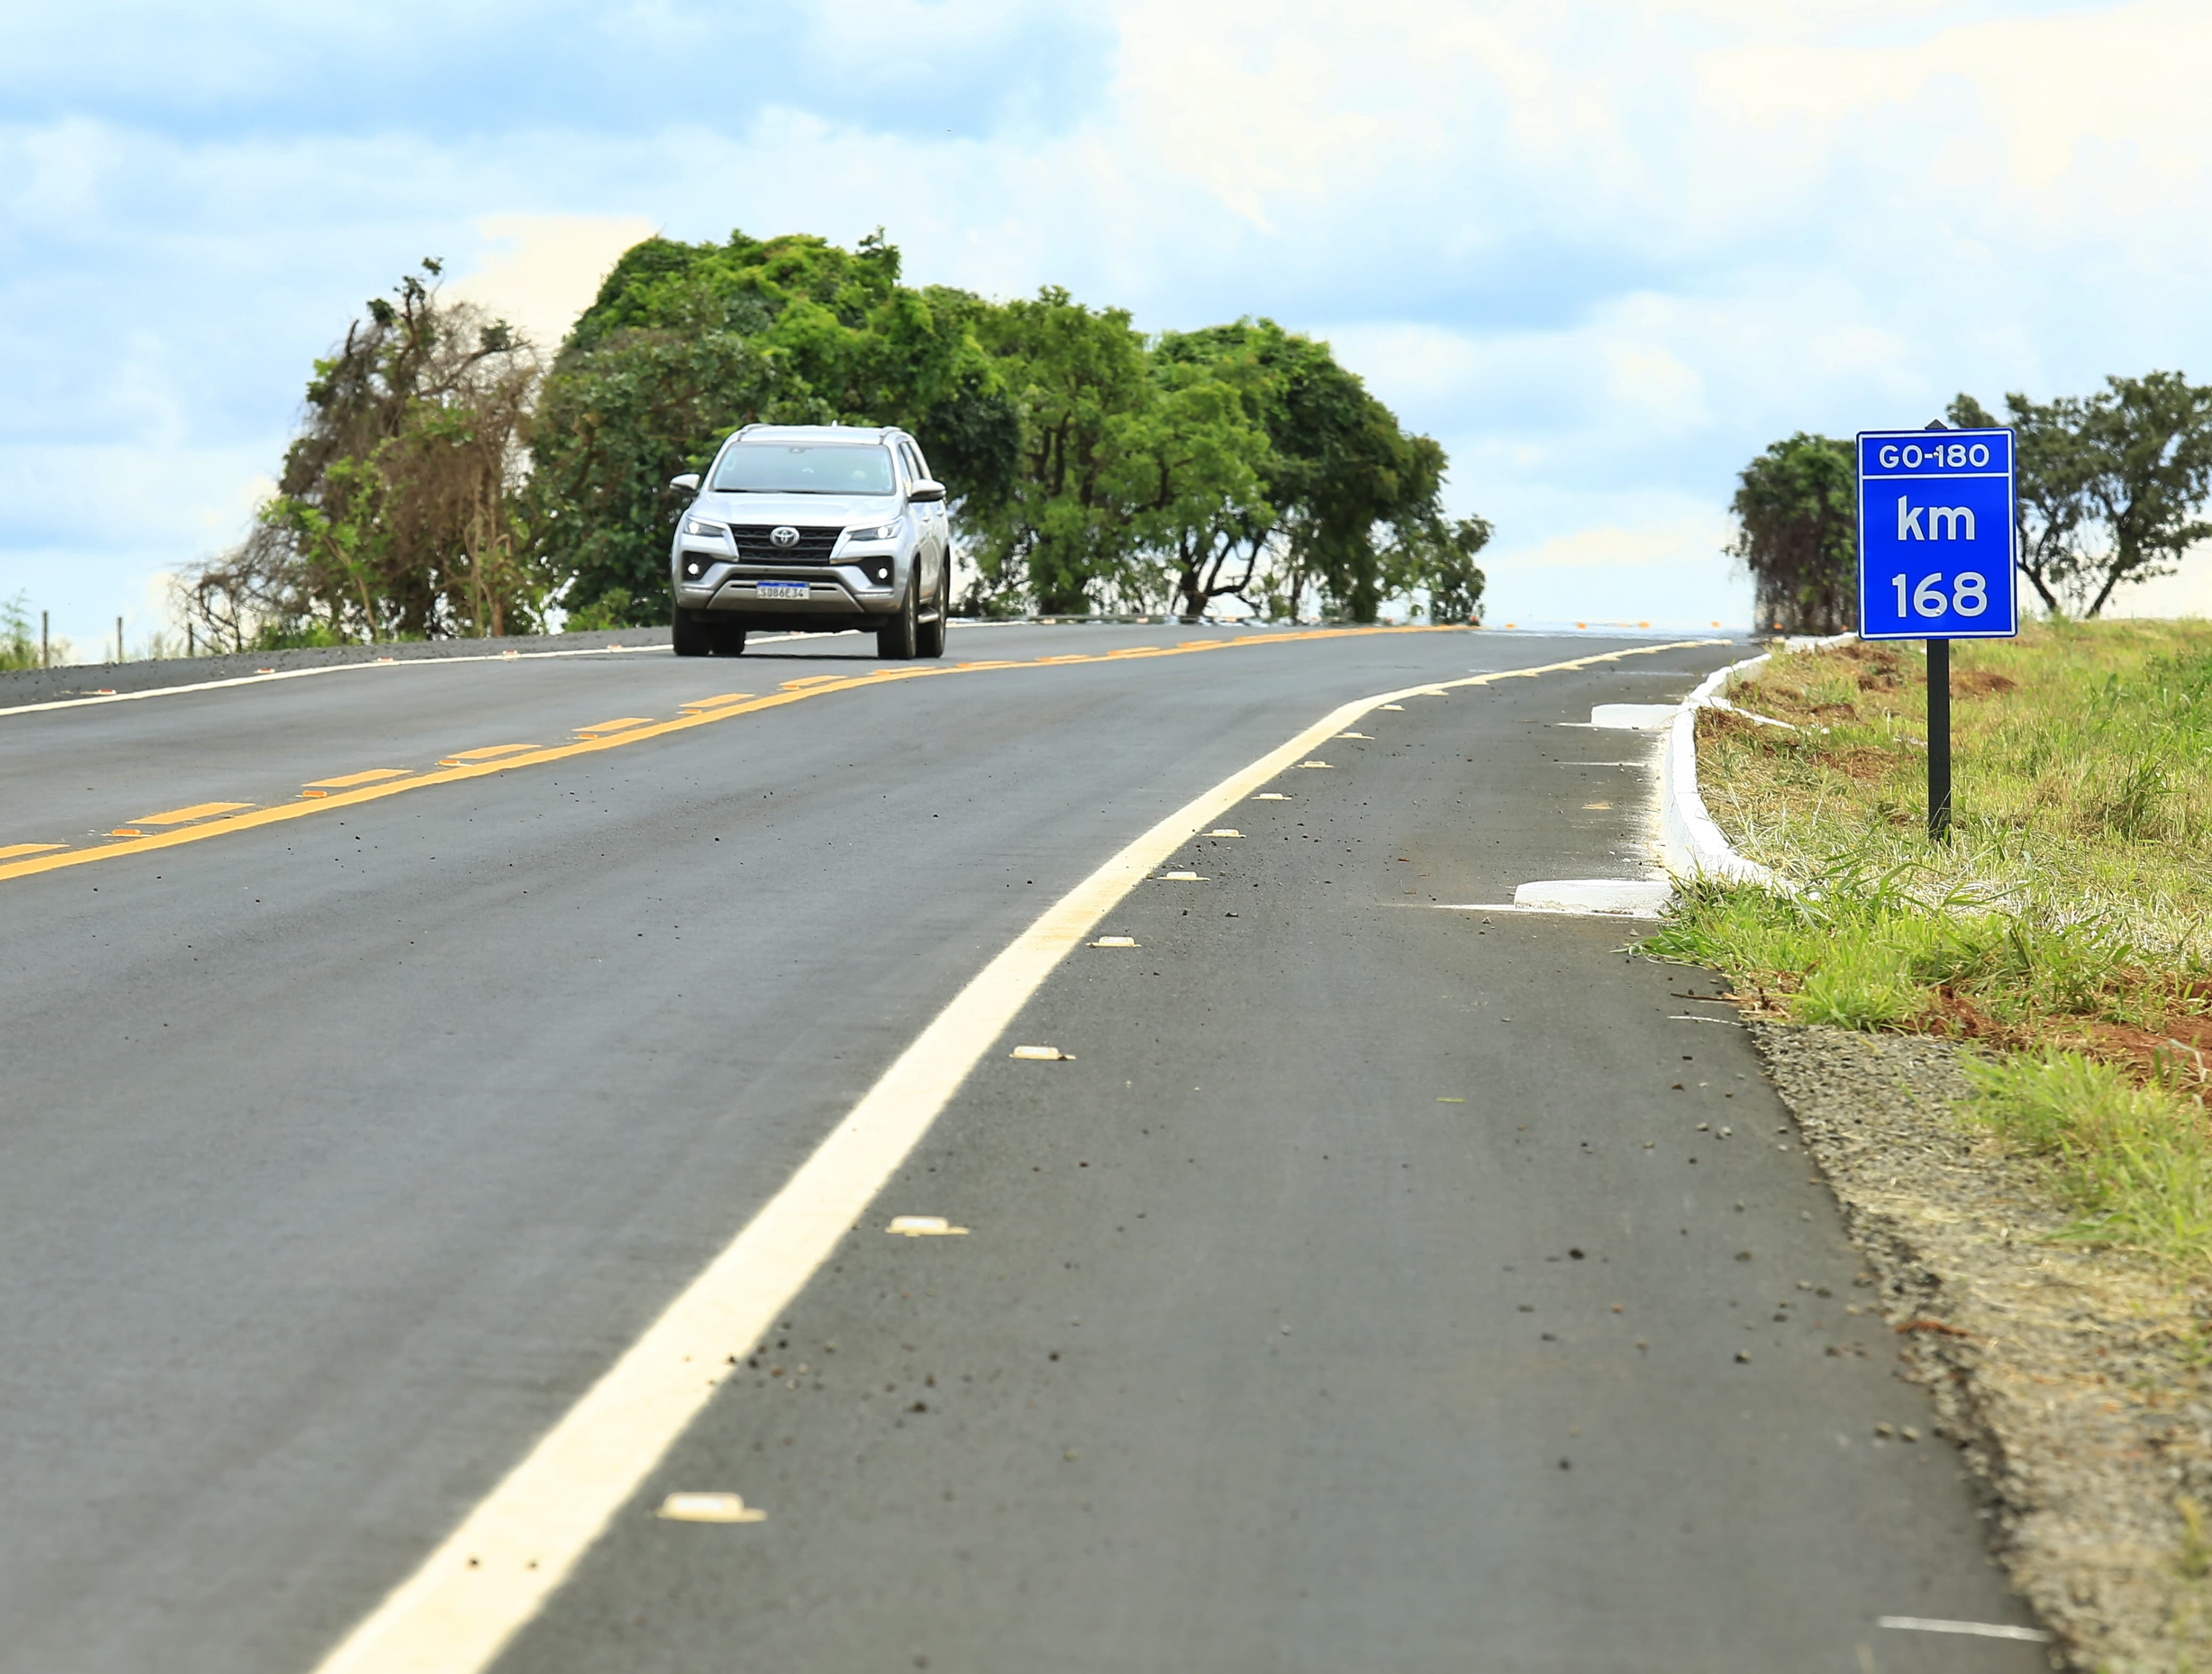 Caiado inaugura rodovia GO-180, no Sudoeste goiano